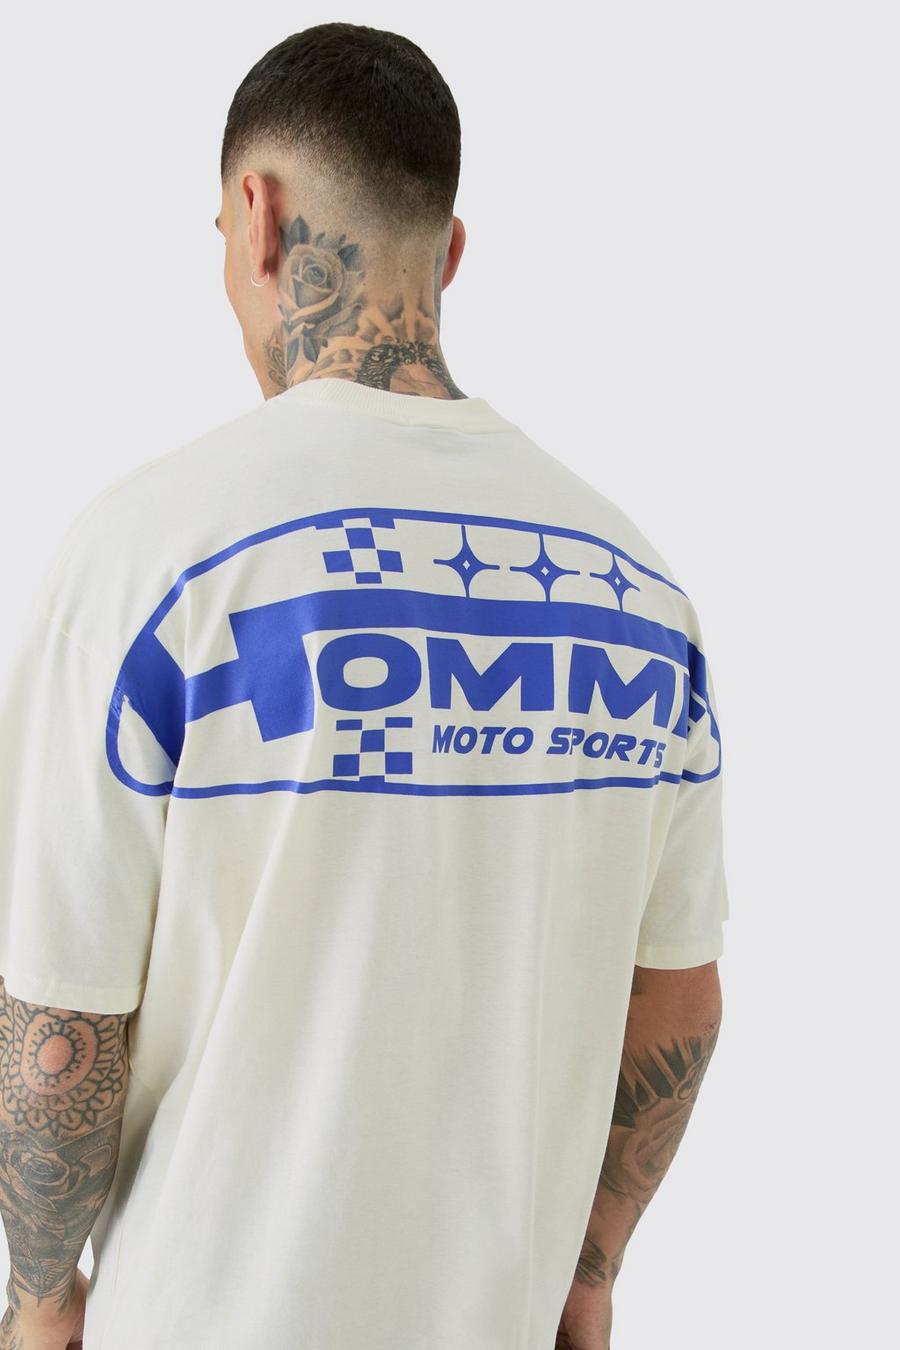 Camiseta Tall con estampado gráfico Homme Moto Sports en color crudo, Ecru image number 1